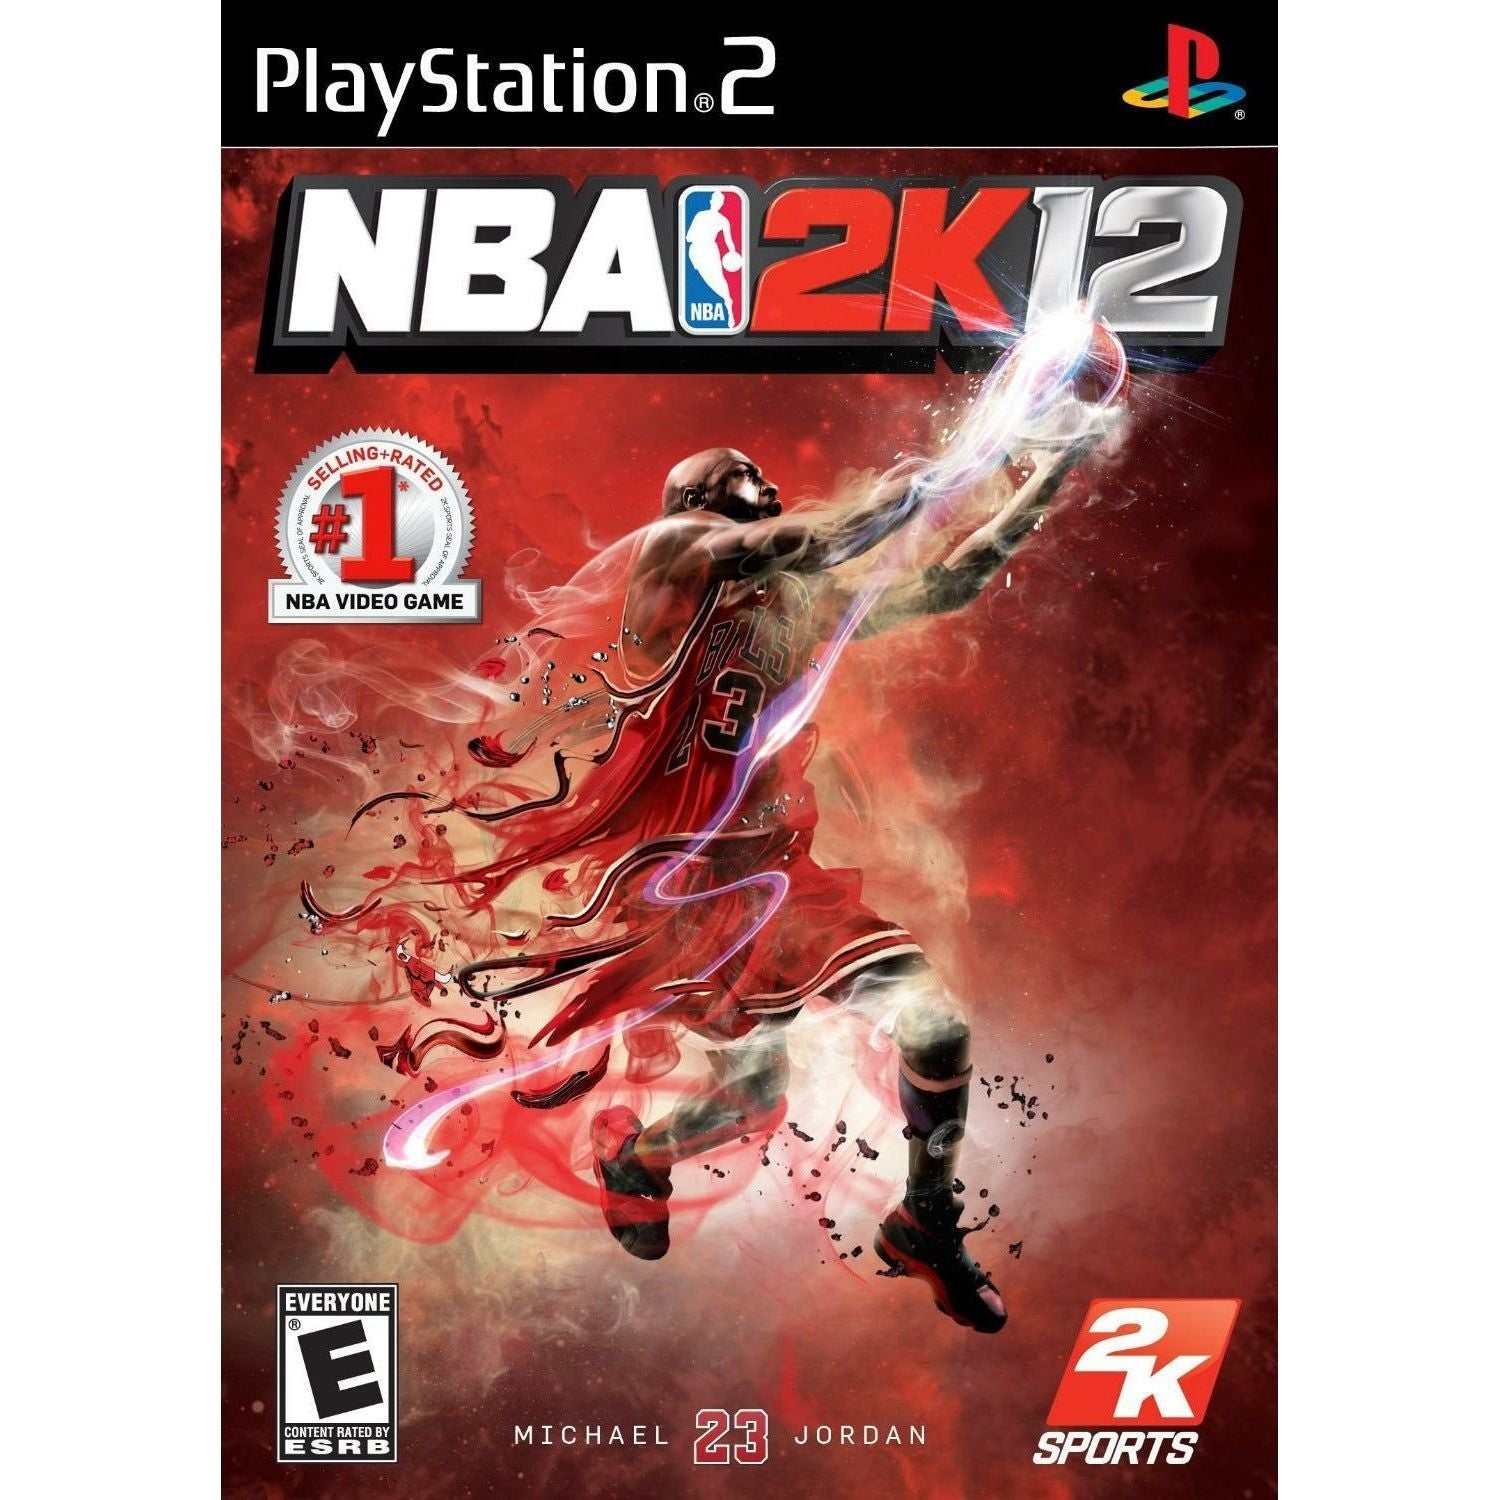 PS2 - NBA 2K12